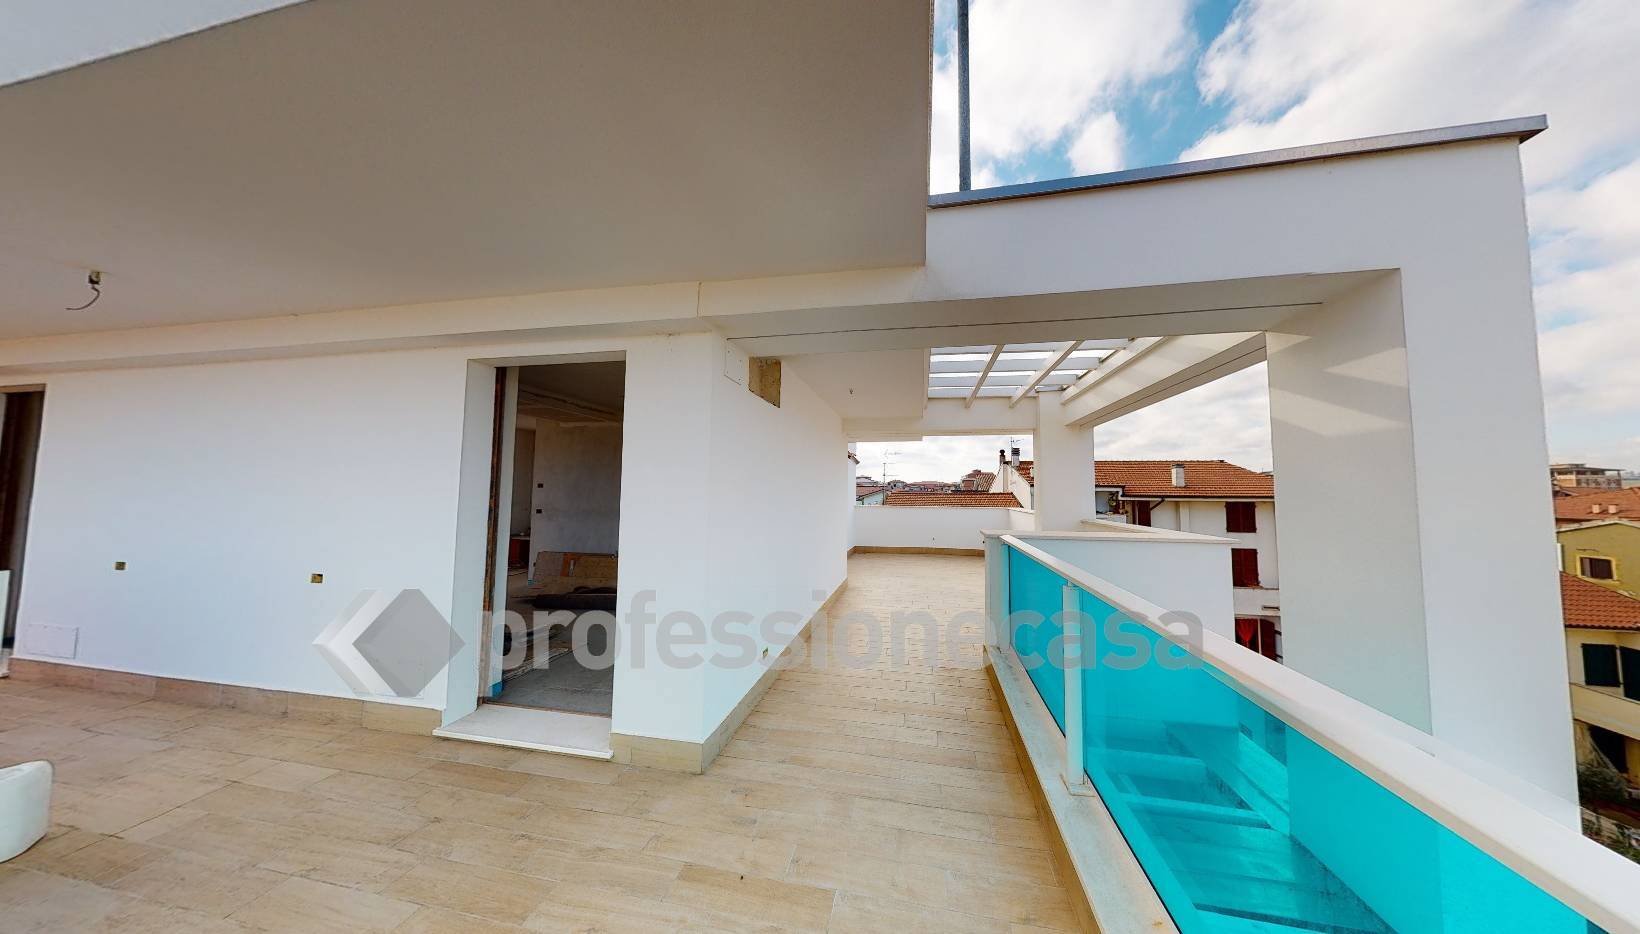 Appartamento in vendita a Porto Sant'Elpidio, 3 locali, zona Località: Mare, prezzo € 300.000 | PortaleAgenzieImmobiliari.it